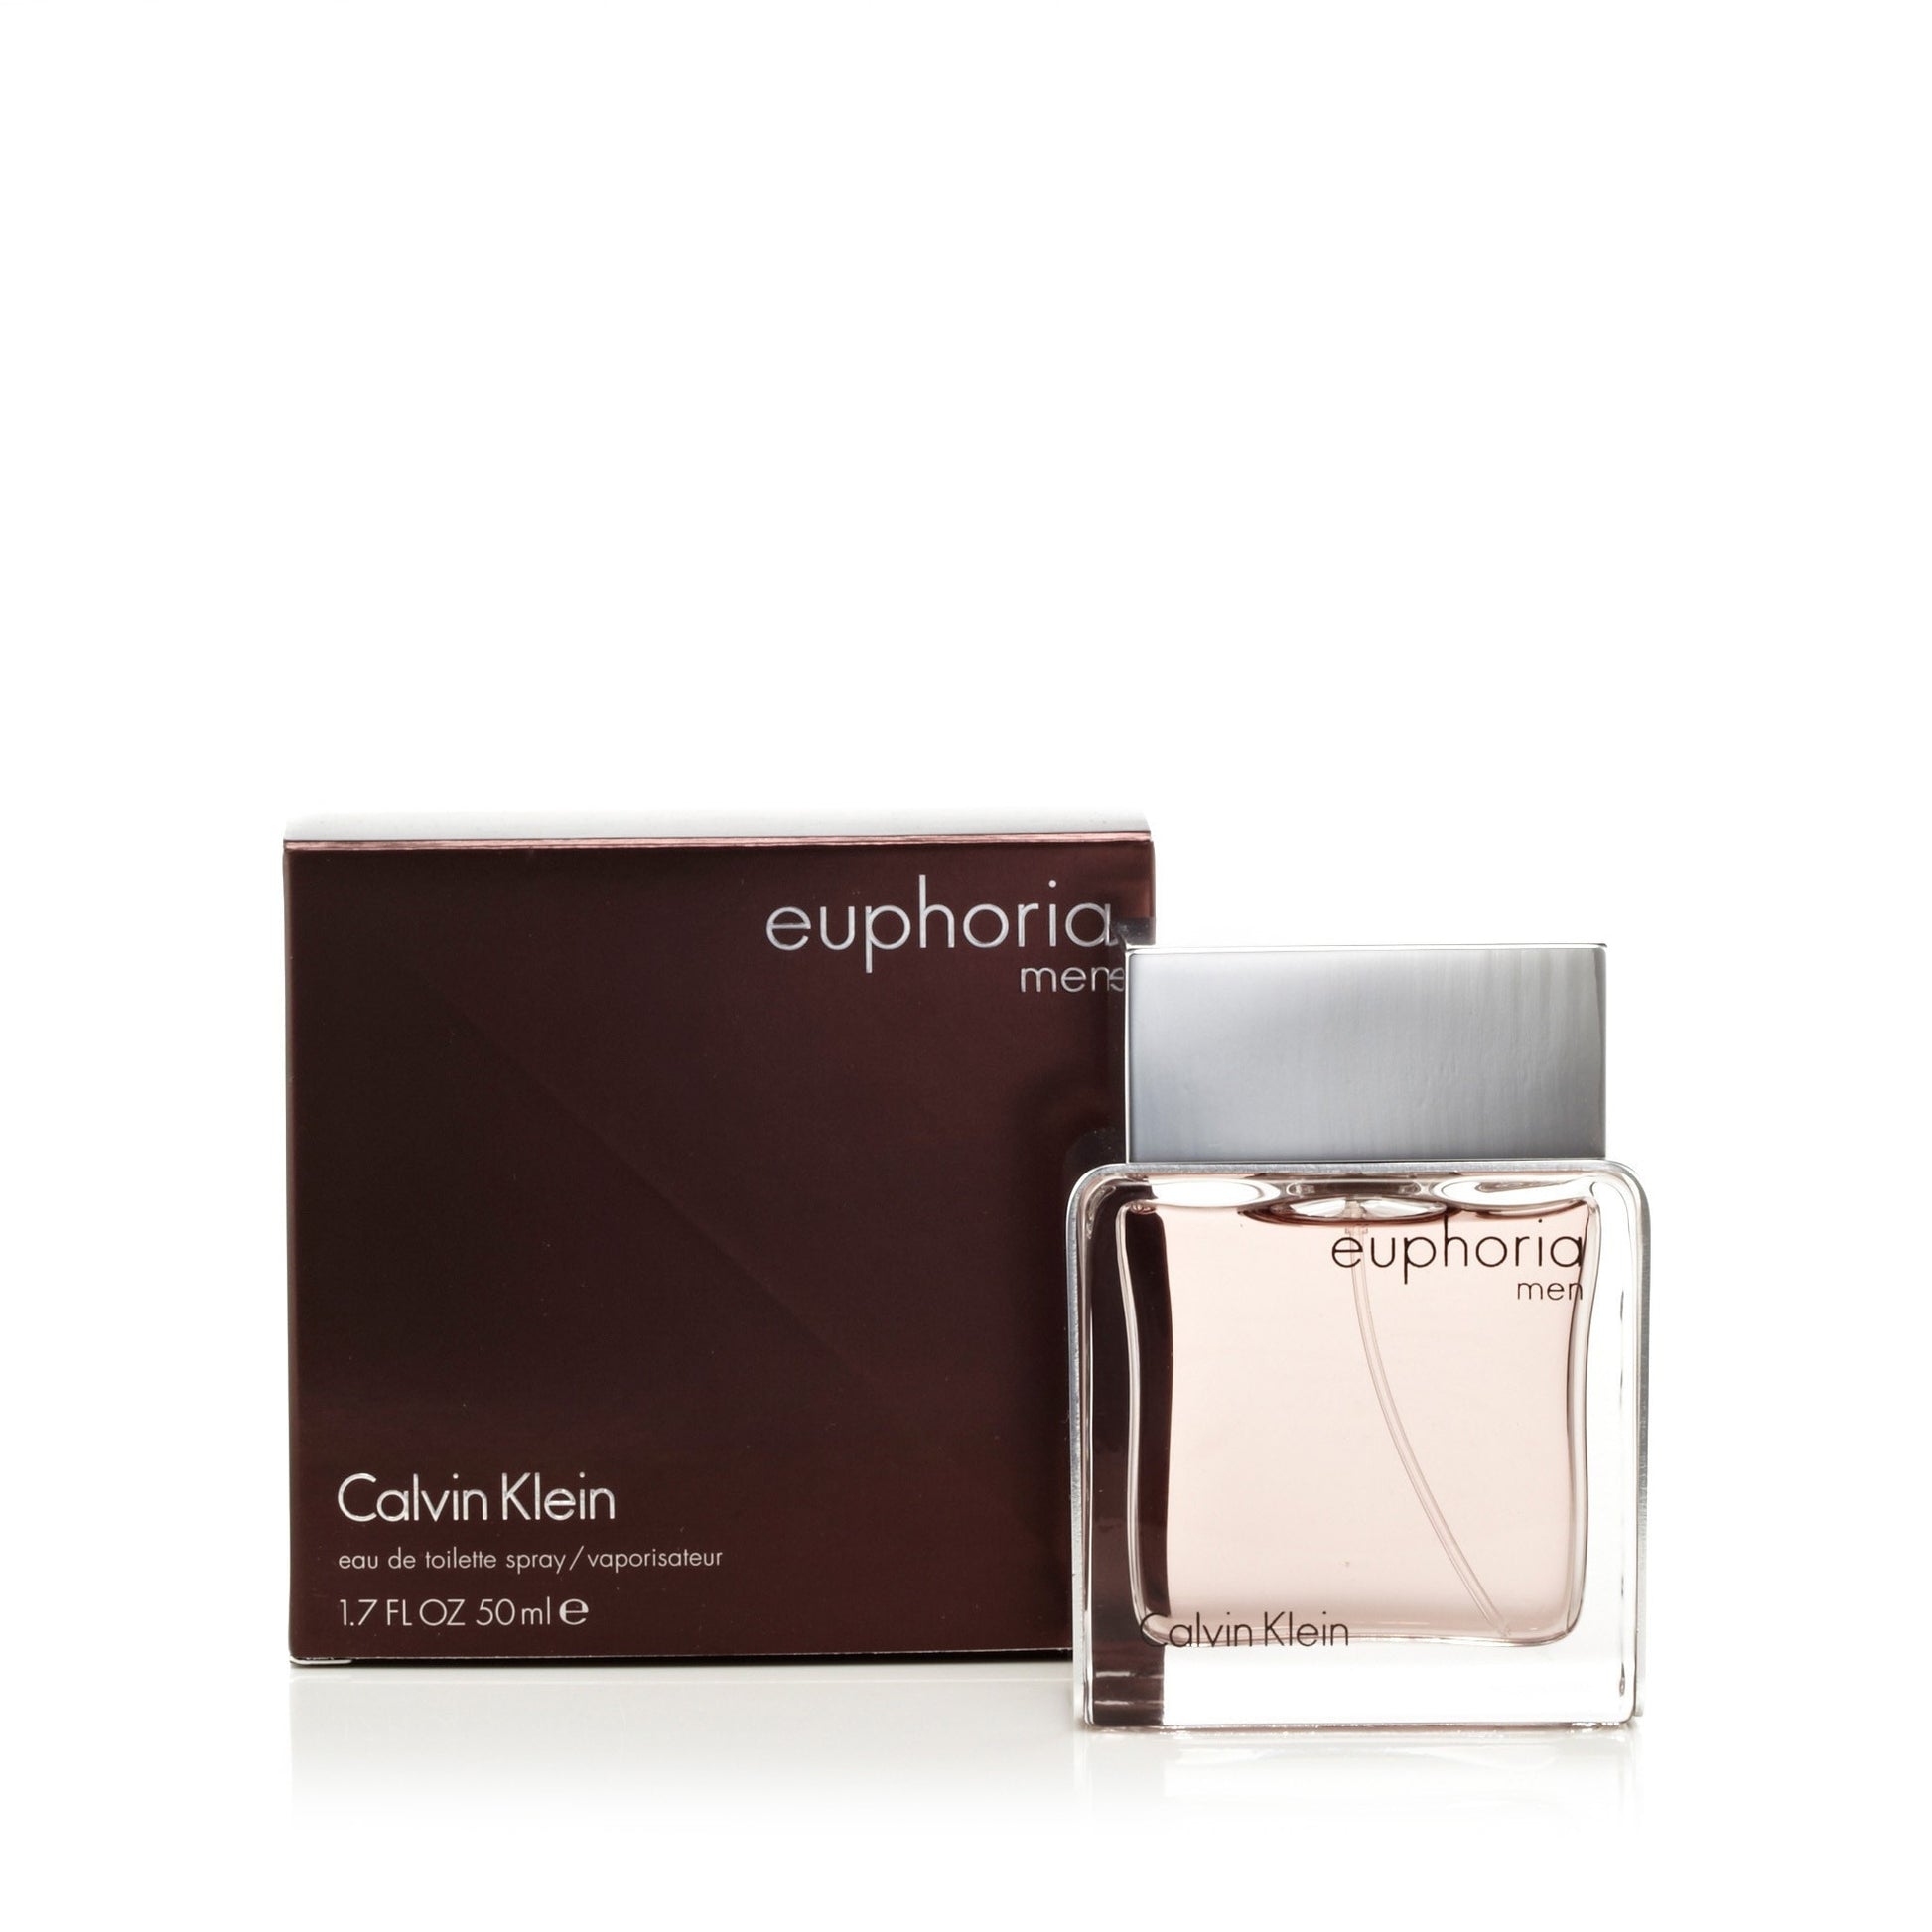 Euphoria Eau de Toilette Spray for Men by Calvin Klein 1.7 oz. Click to open in modal